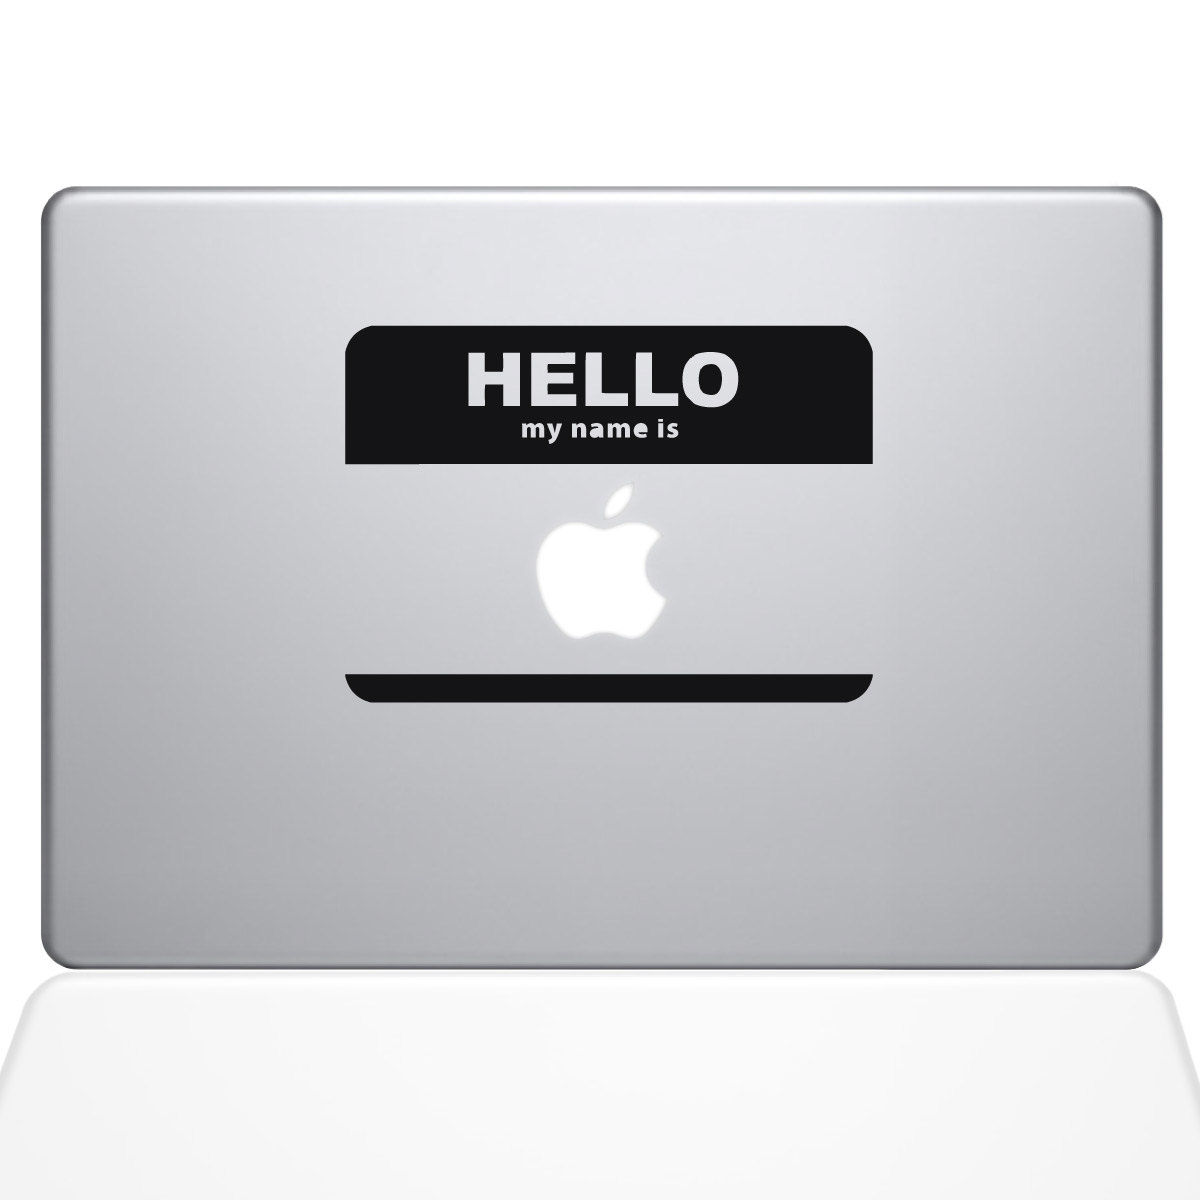 Name Tag Macbook Decal